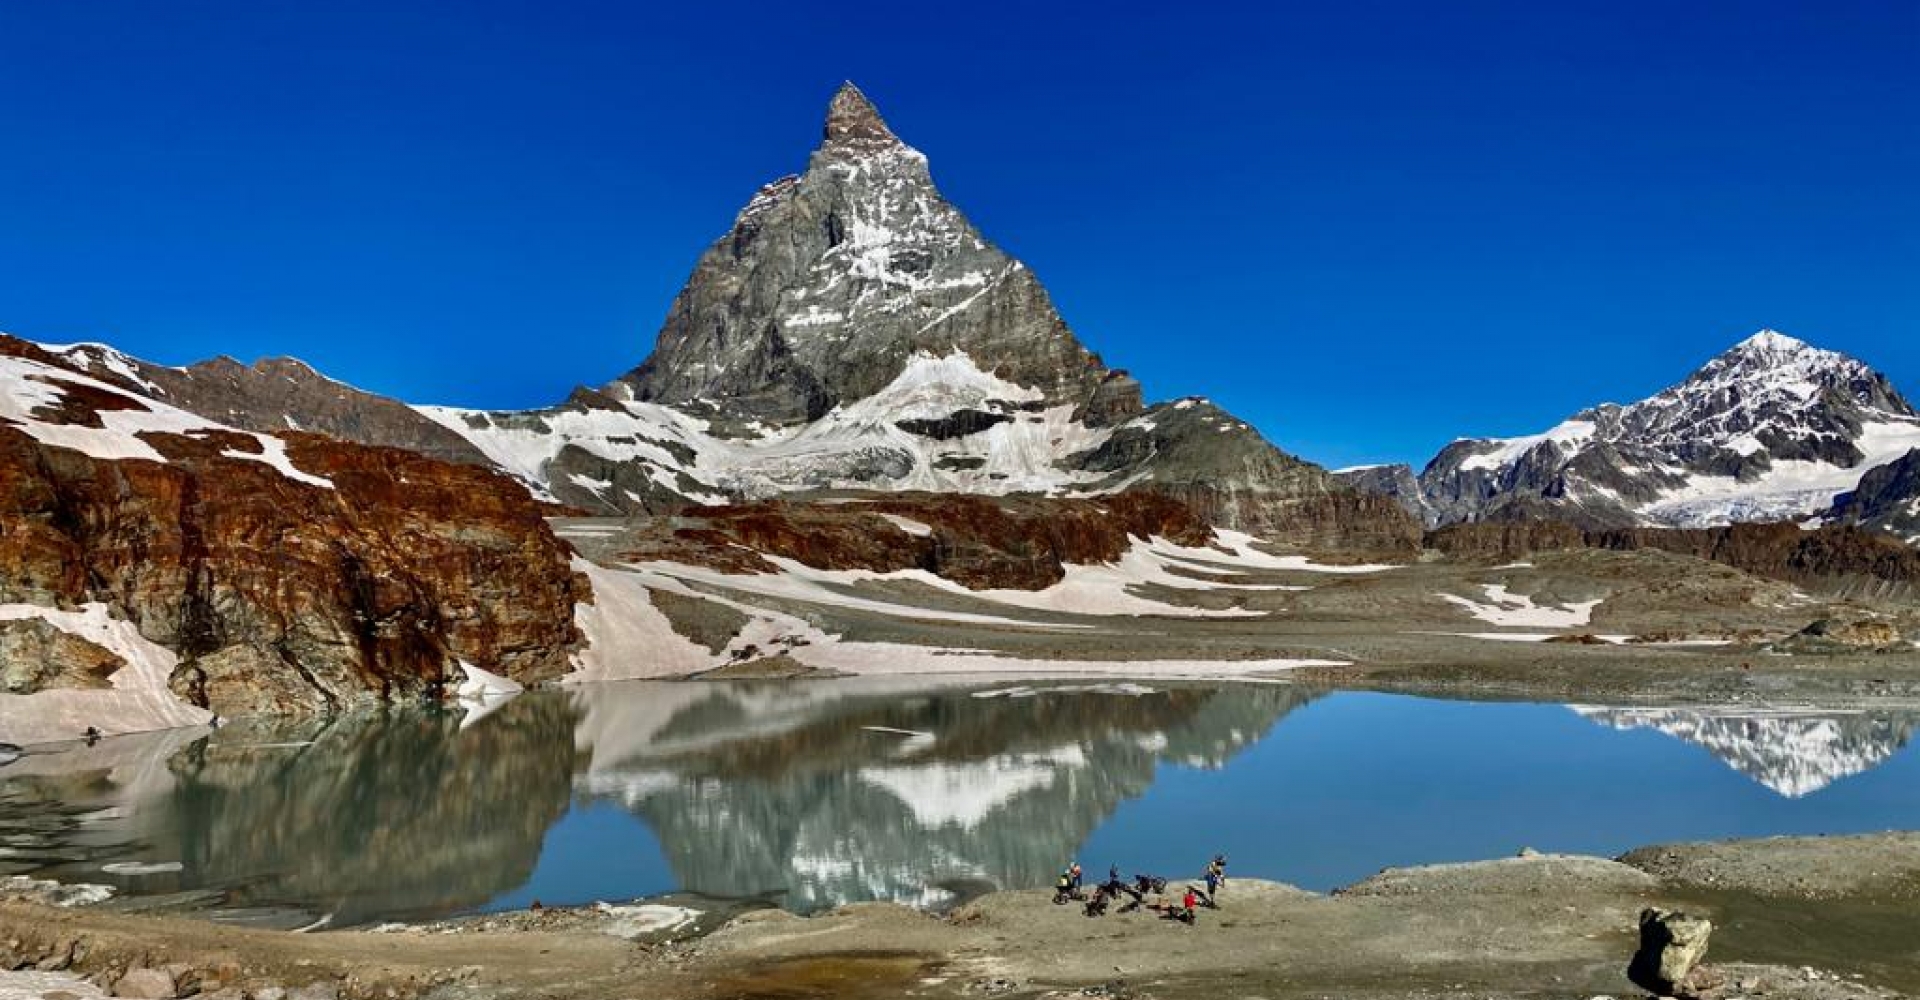 Slide Helibike Touch the Matterhorn